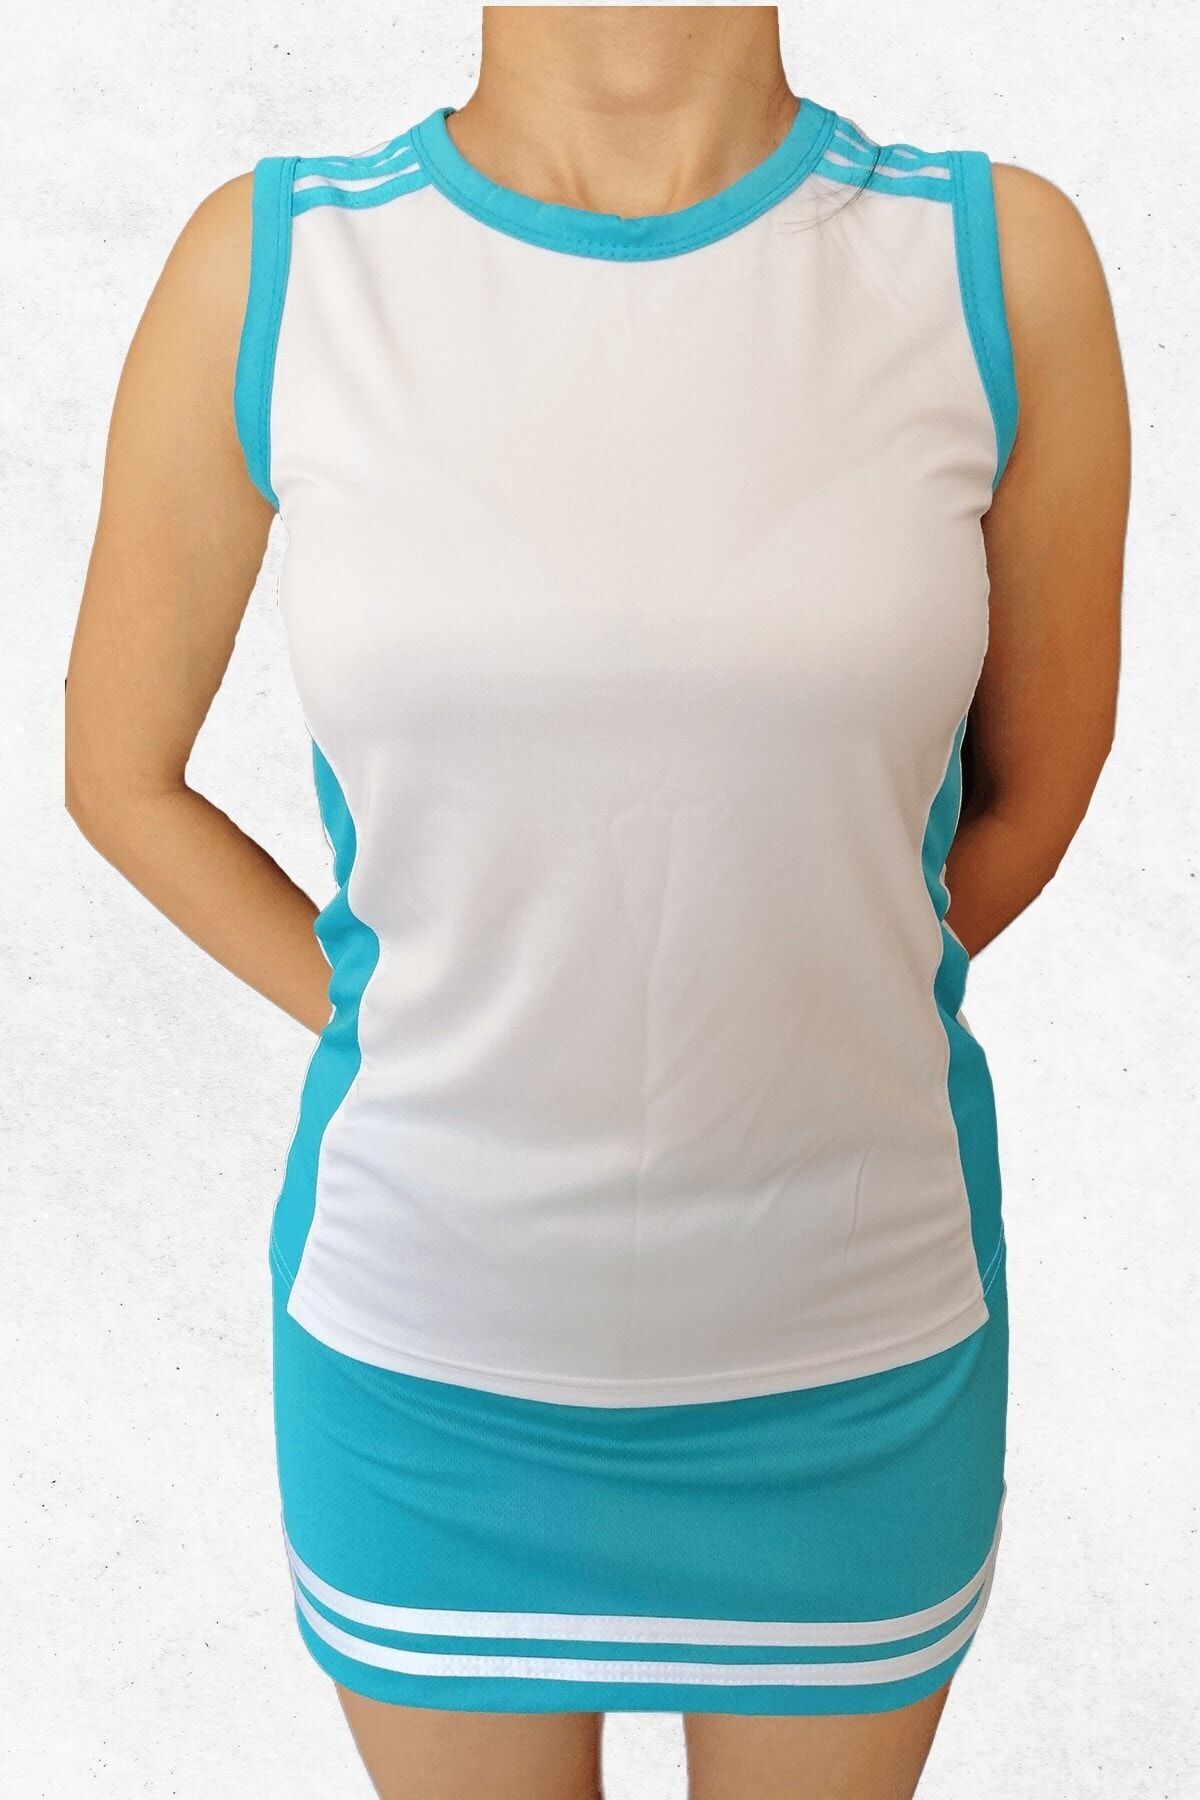 Modapalace Kadın turkuaz Şerit Modelli Sıfır Kol Kadın Spor Tişört